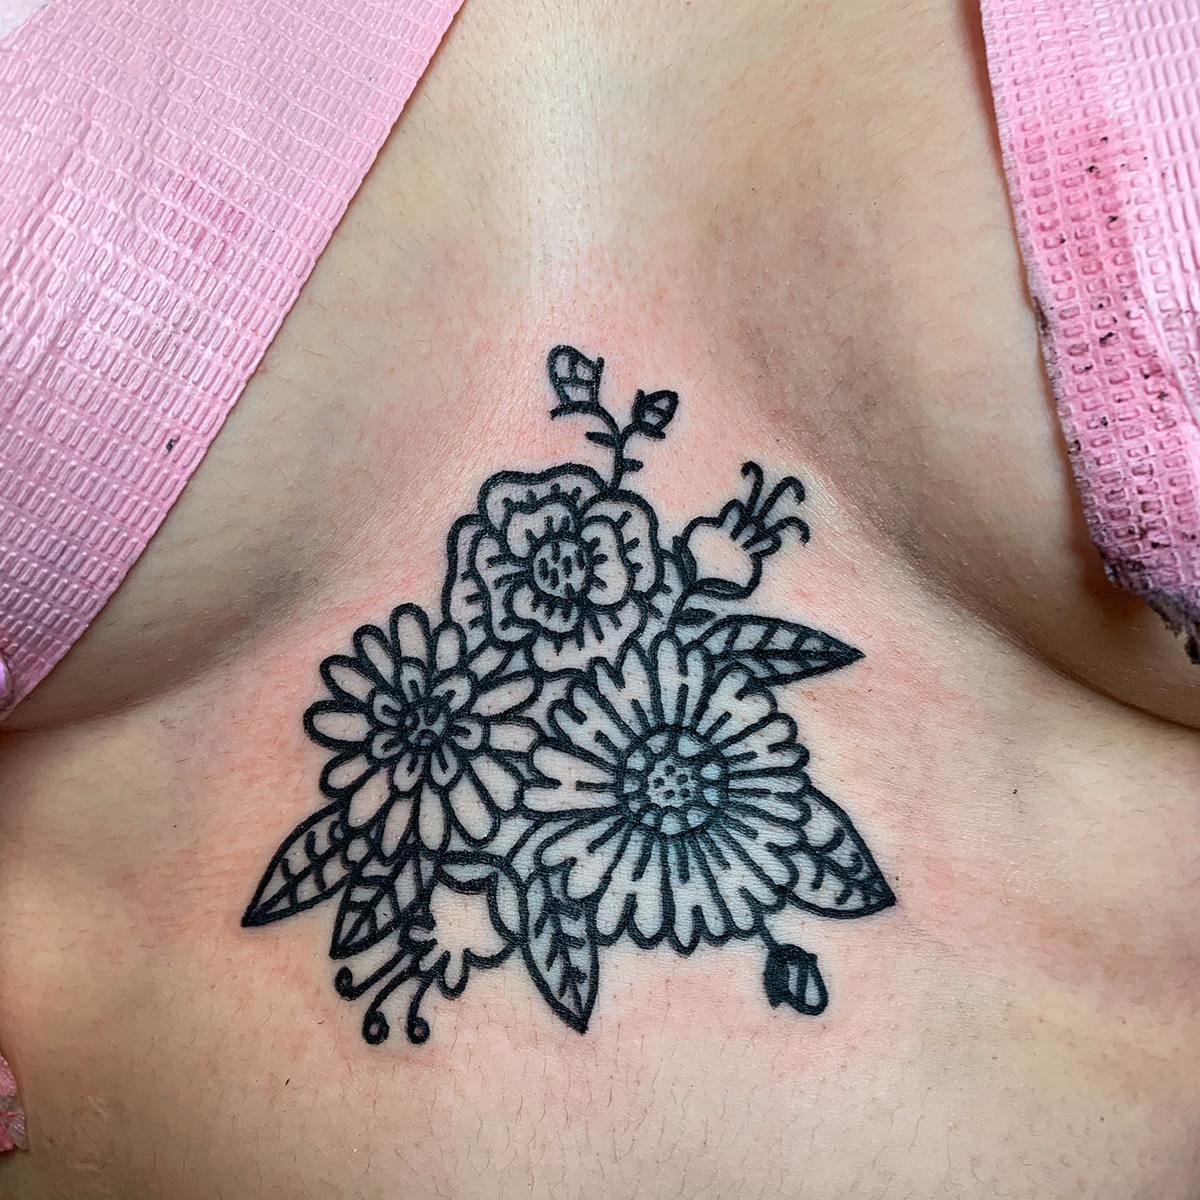 El Salvador tattoo self love feminism floral